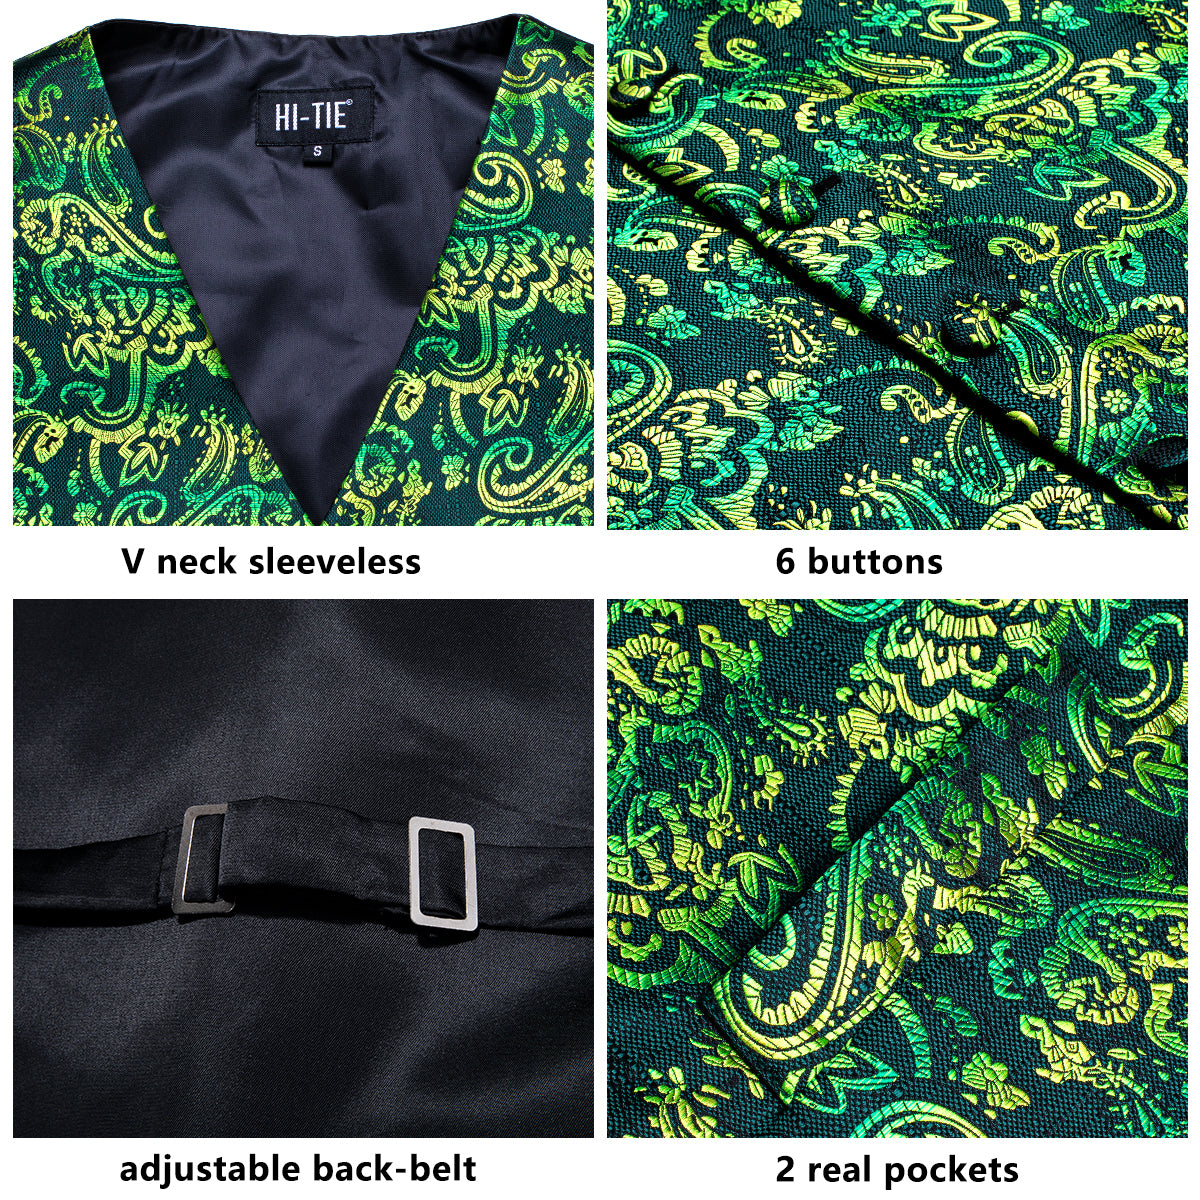 New Green Yellow Paisley Silk Men's Vest Hanky Cufflinks Tie Set Waistcoat Suit Set